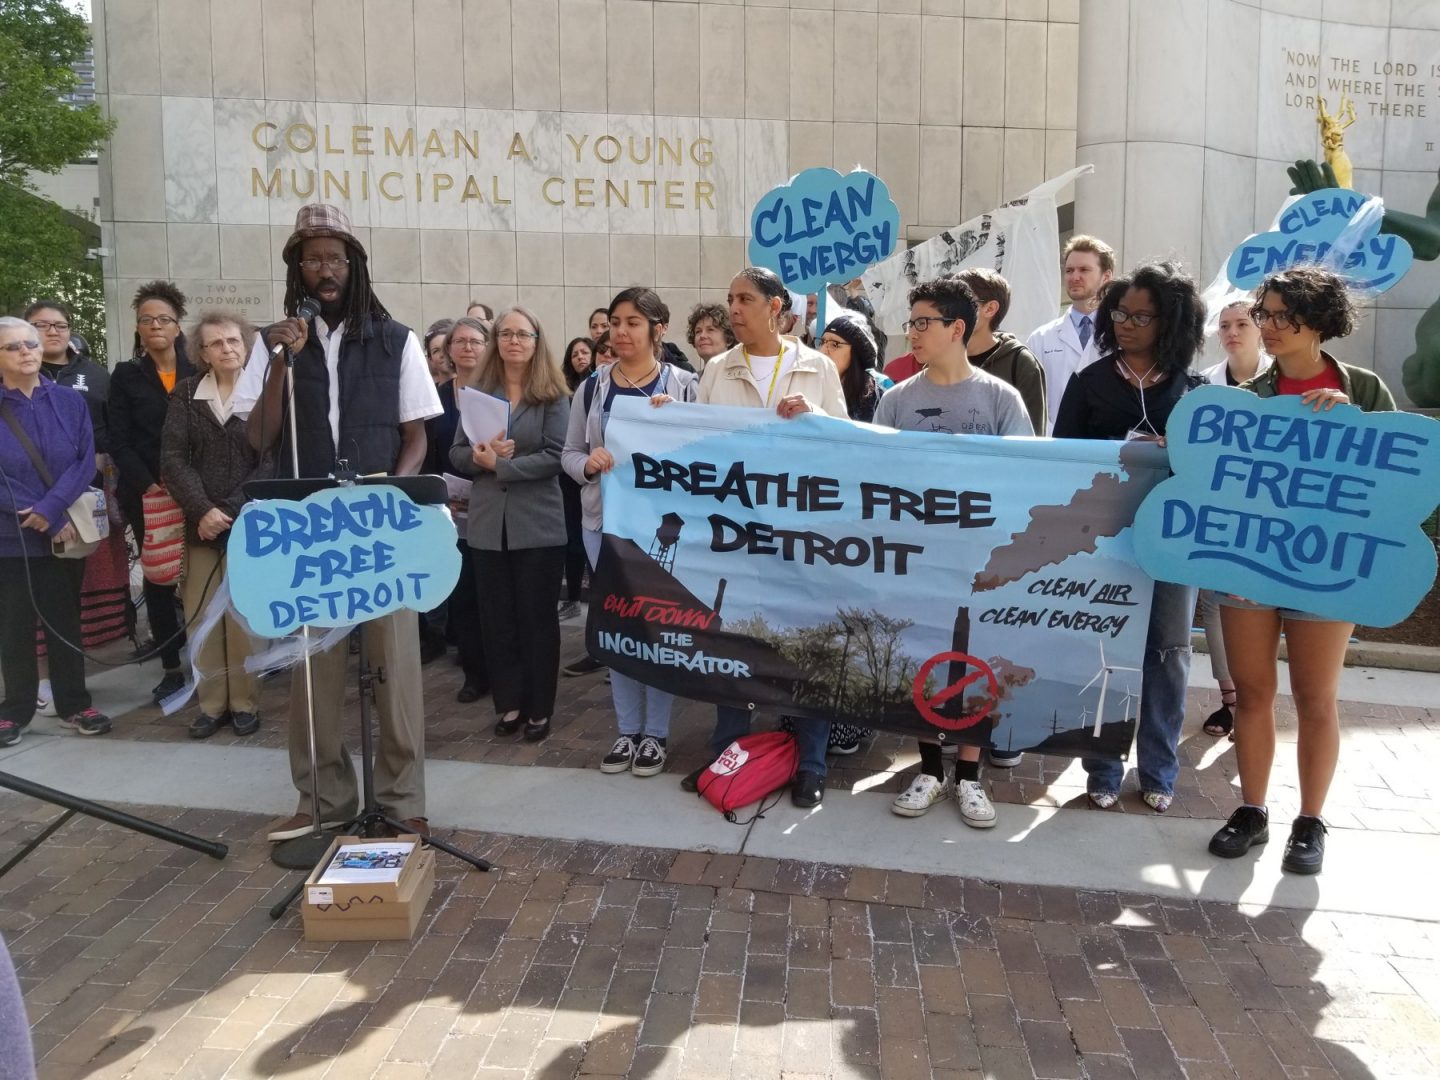 Les partisans de Breathe Free Detroit se sont rassemblés autour d’un homme avec un microphone.